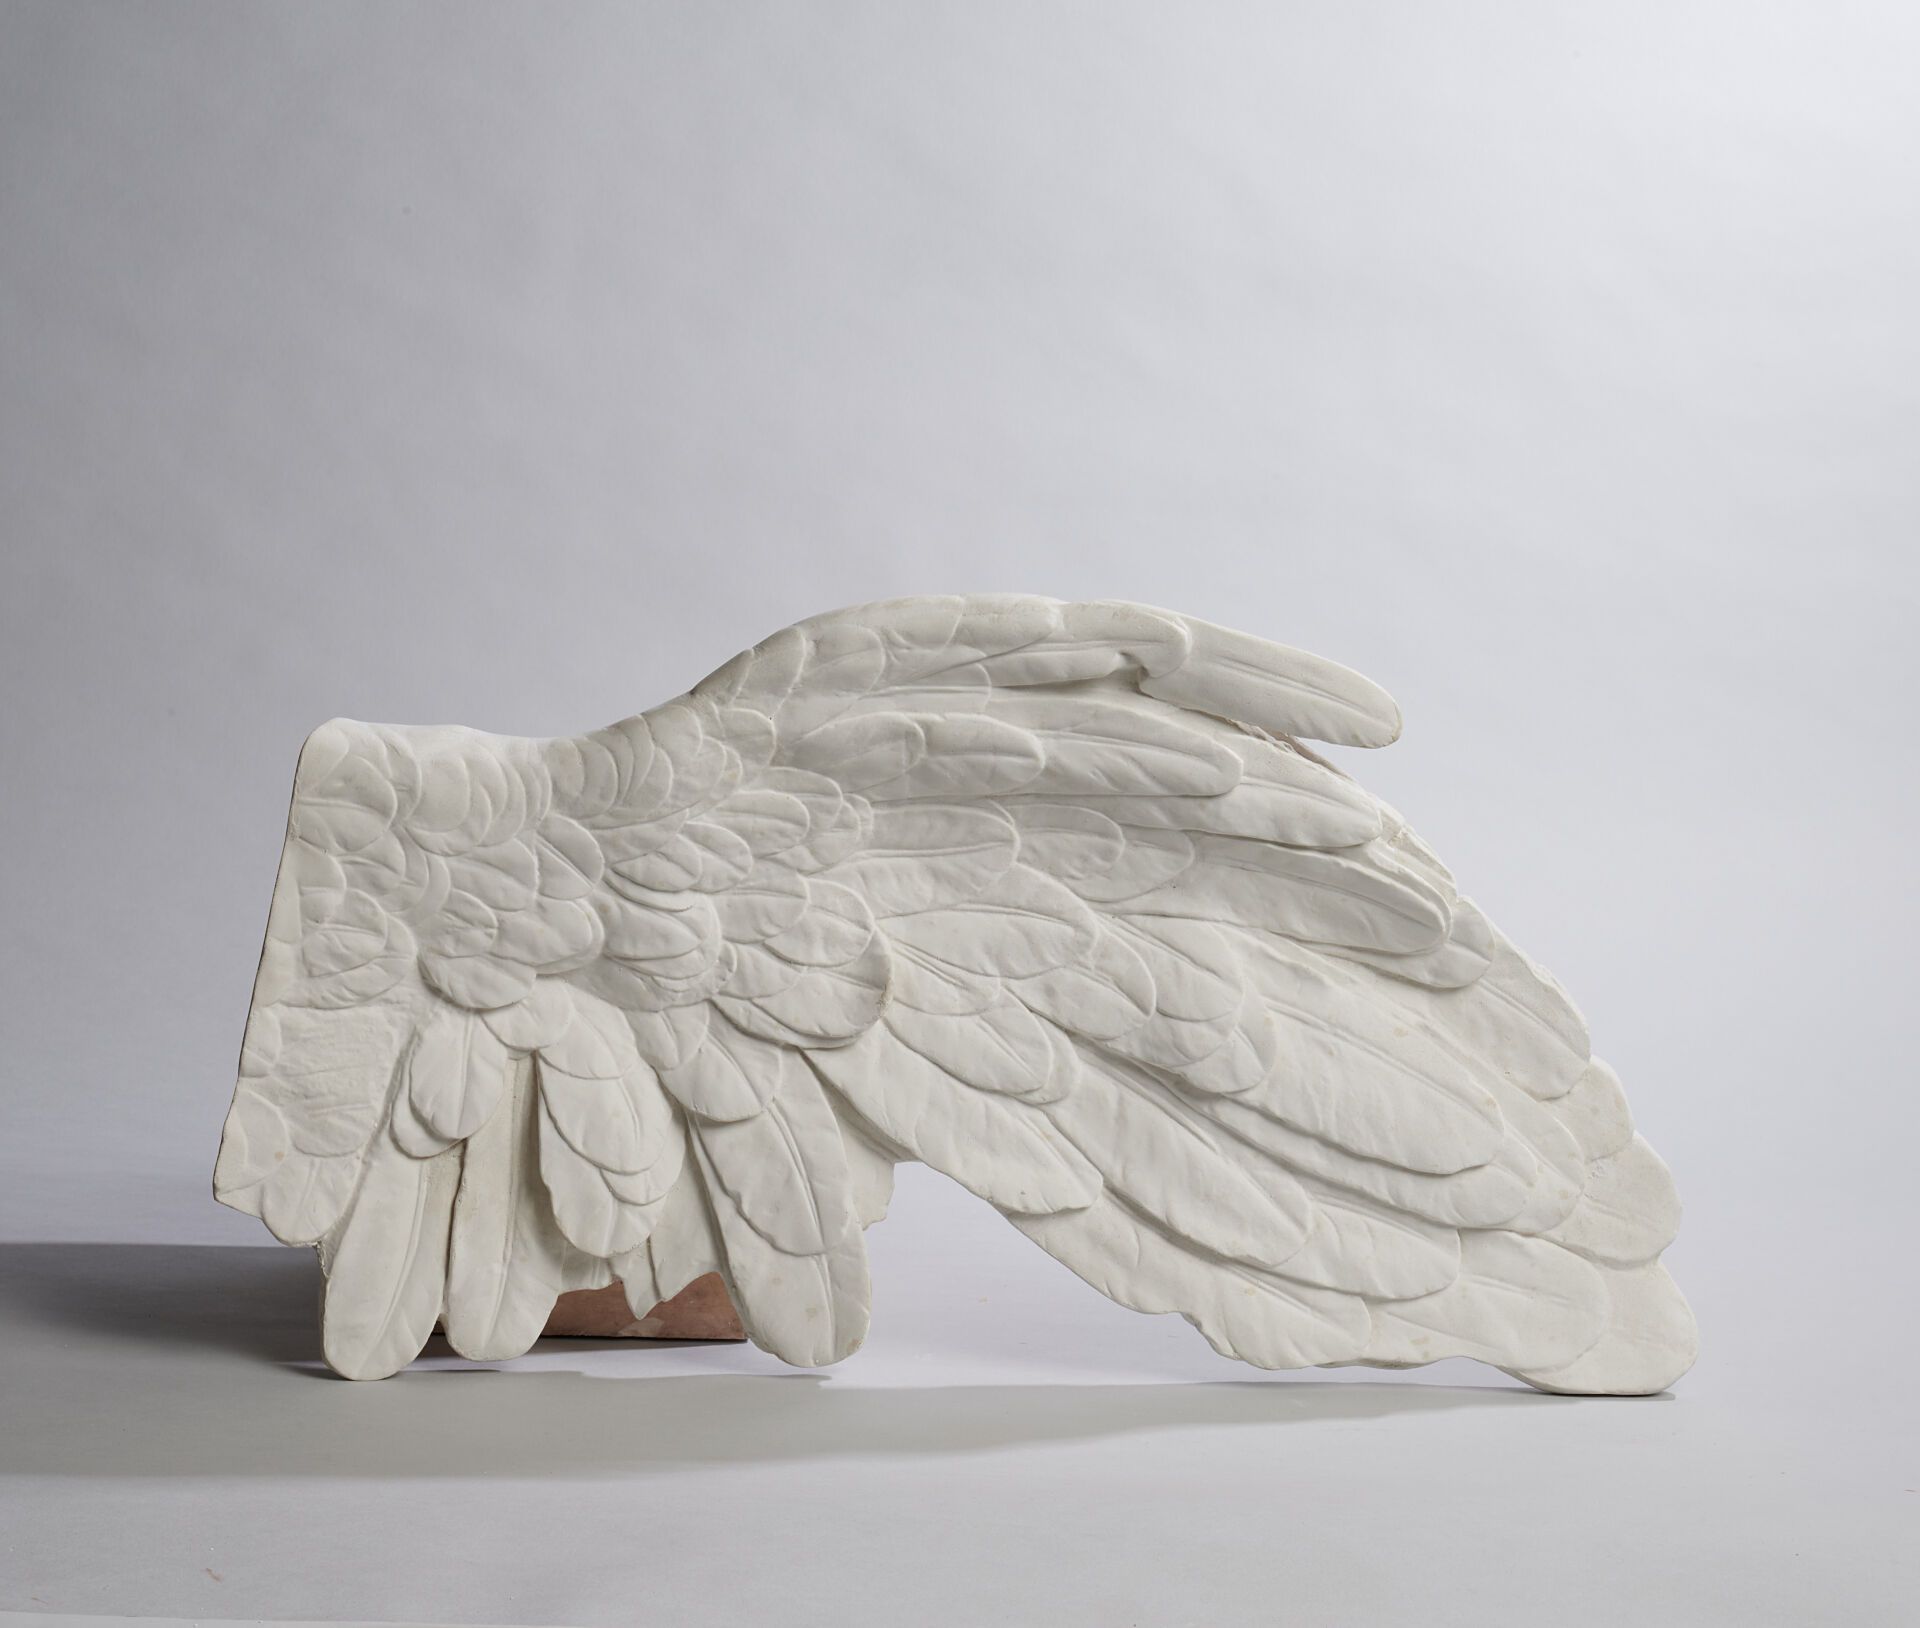 Aile gauche de la Victoire de Samothrace (réduction) 国家博物馆模塑工作室（1928 年）
萨摩色雷斯胜利女&hellip;